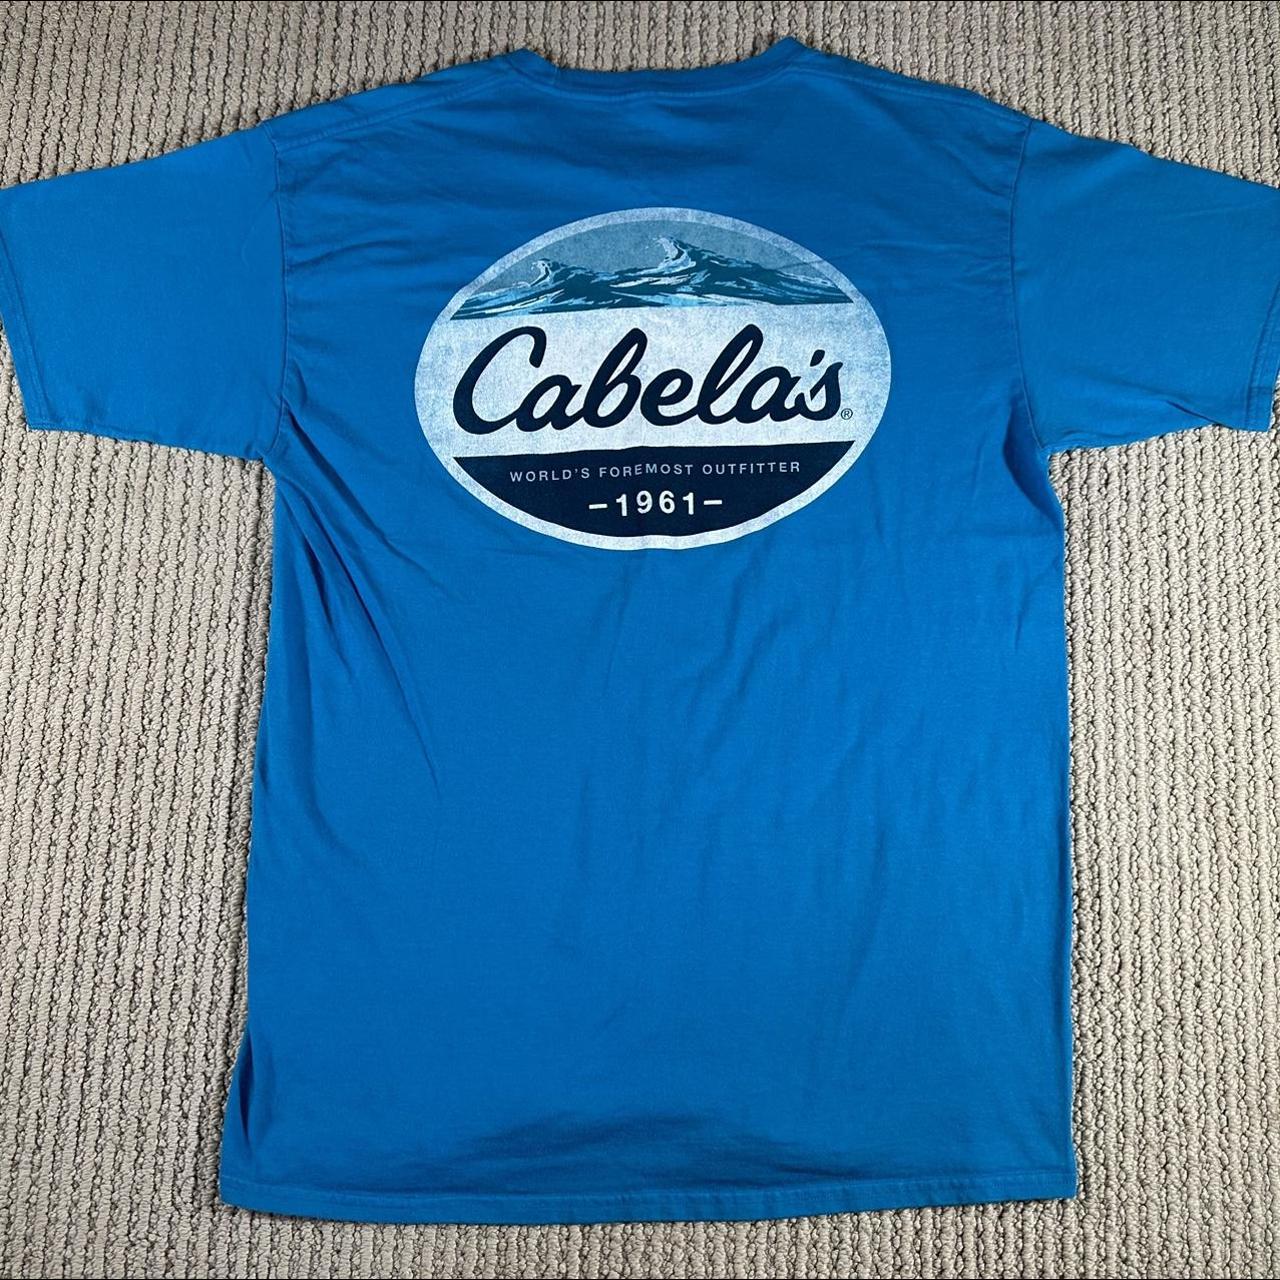 Cabelas Graphic T-shirts Men's Large Reg Blue White